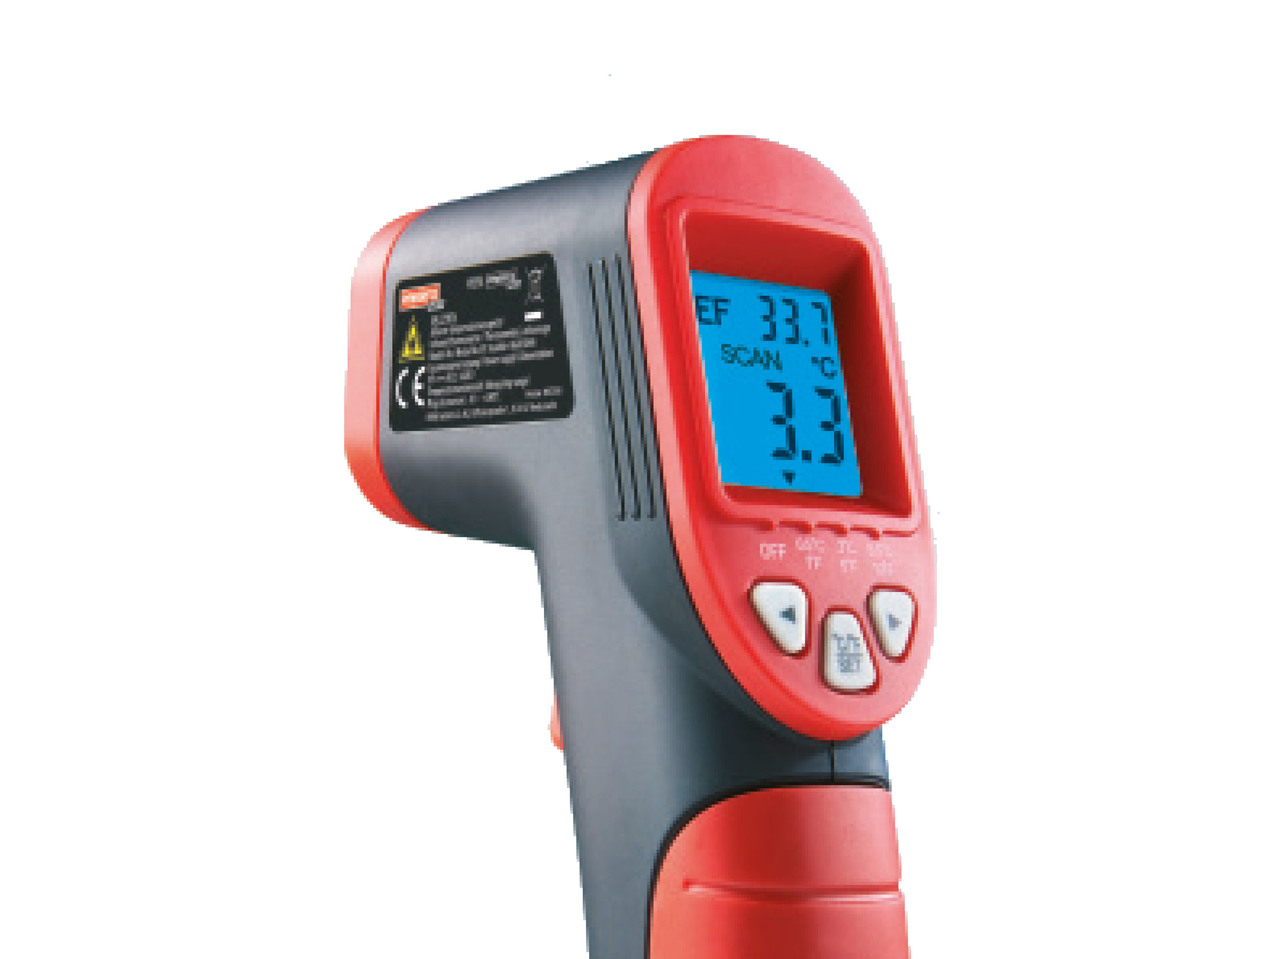 POWERFIX Infrared Temperature Scanner